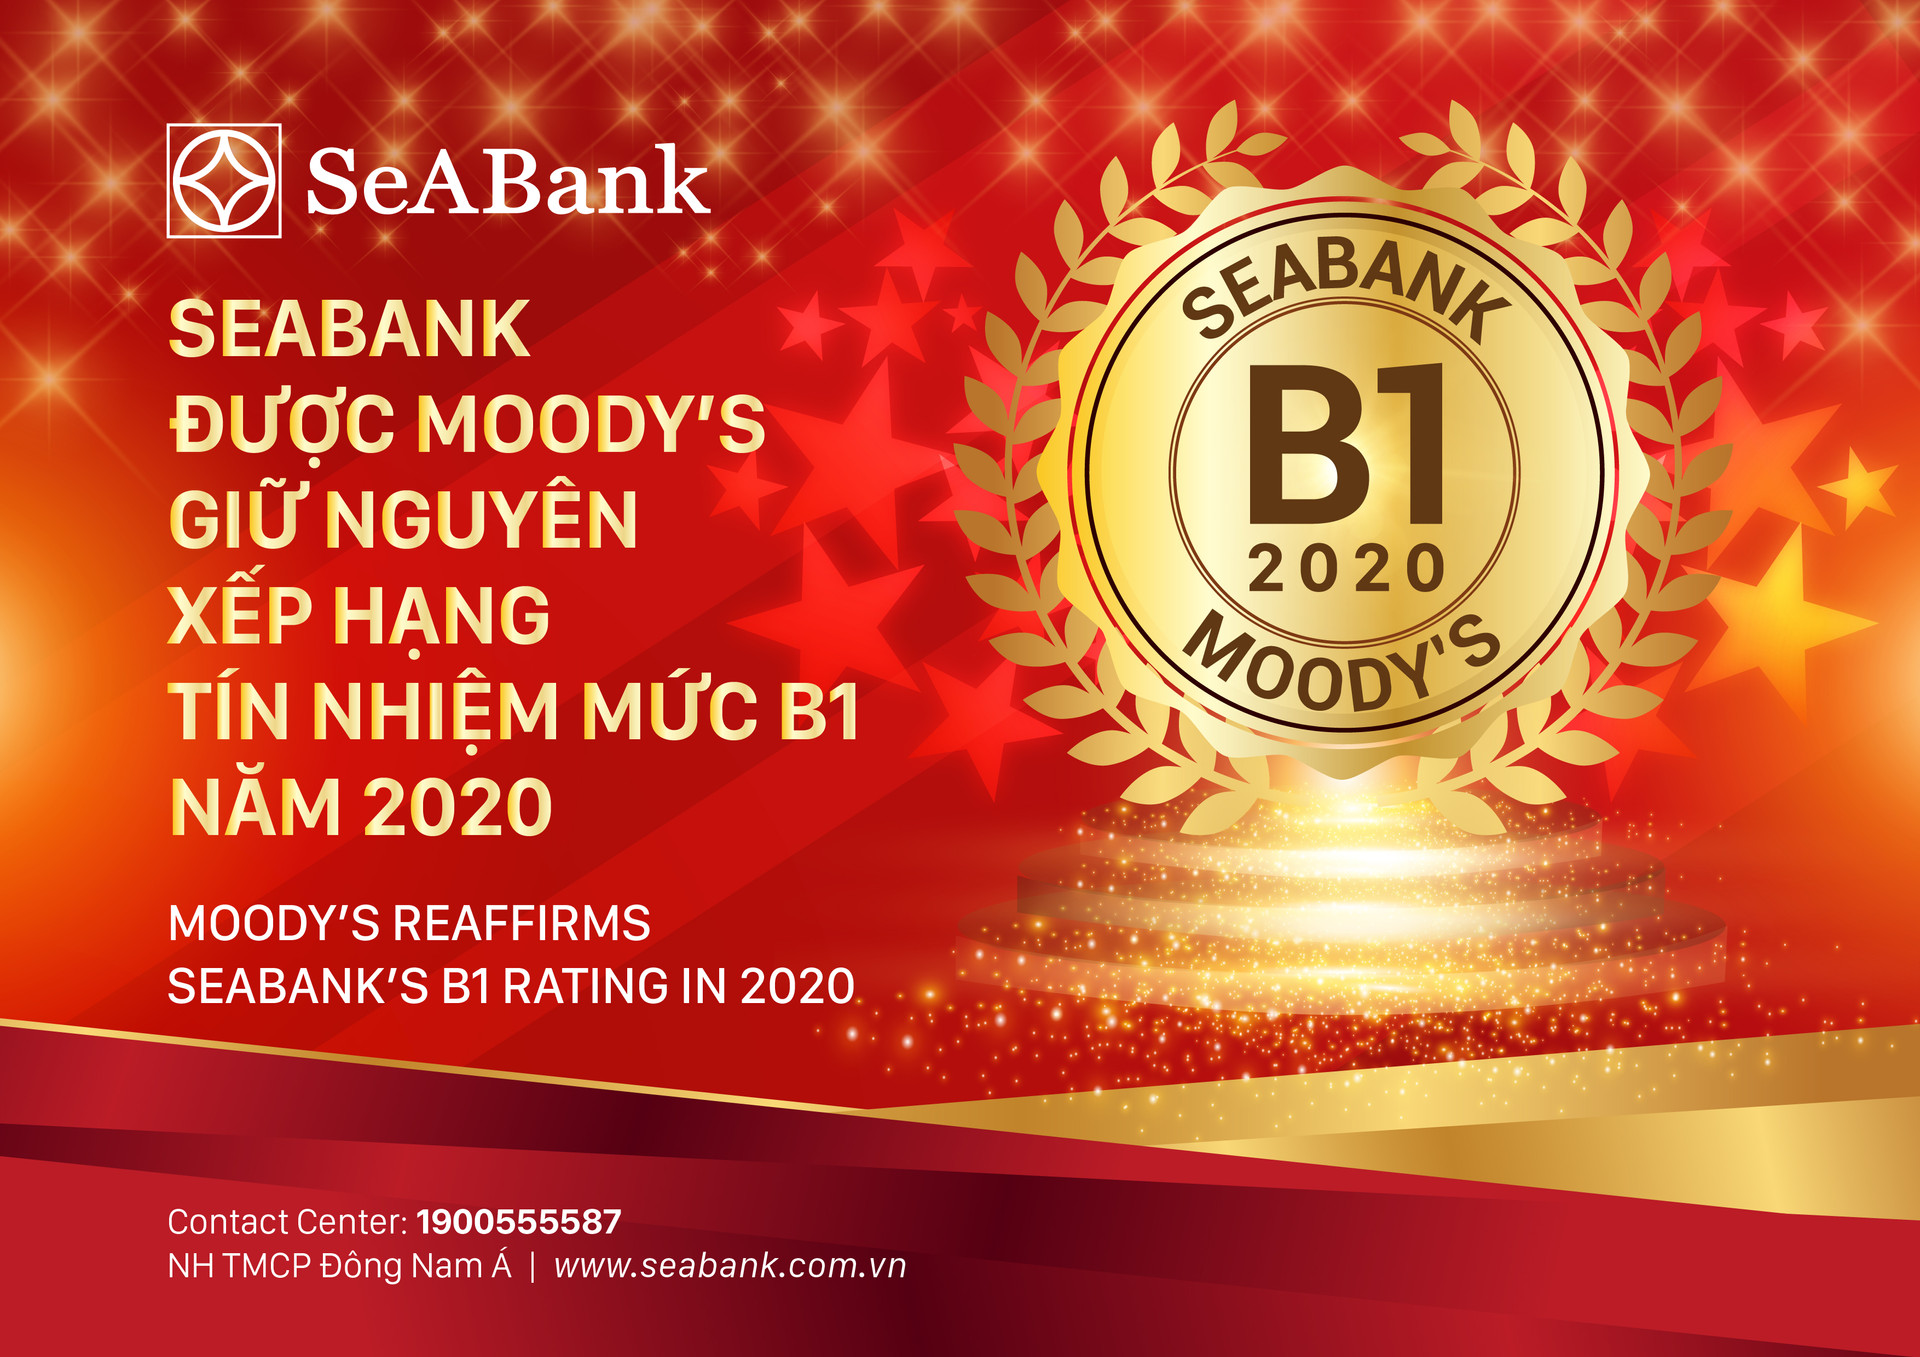 Seabank được Moody's giữ nguyên xếp hạng tín nhiệm B1